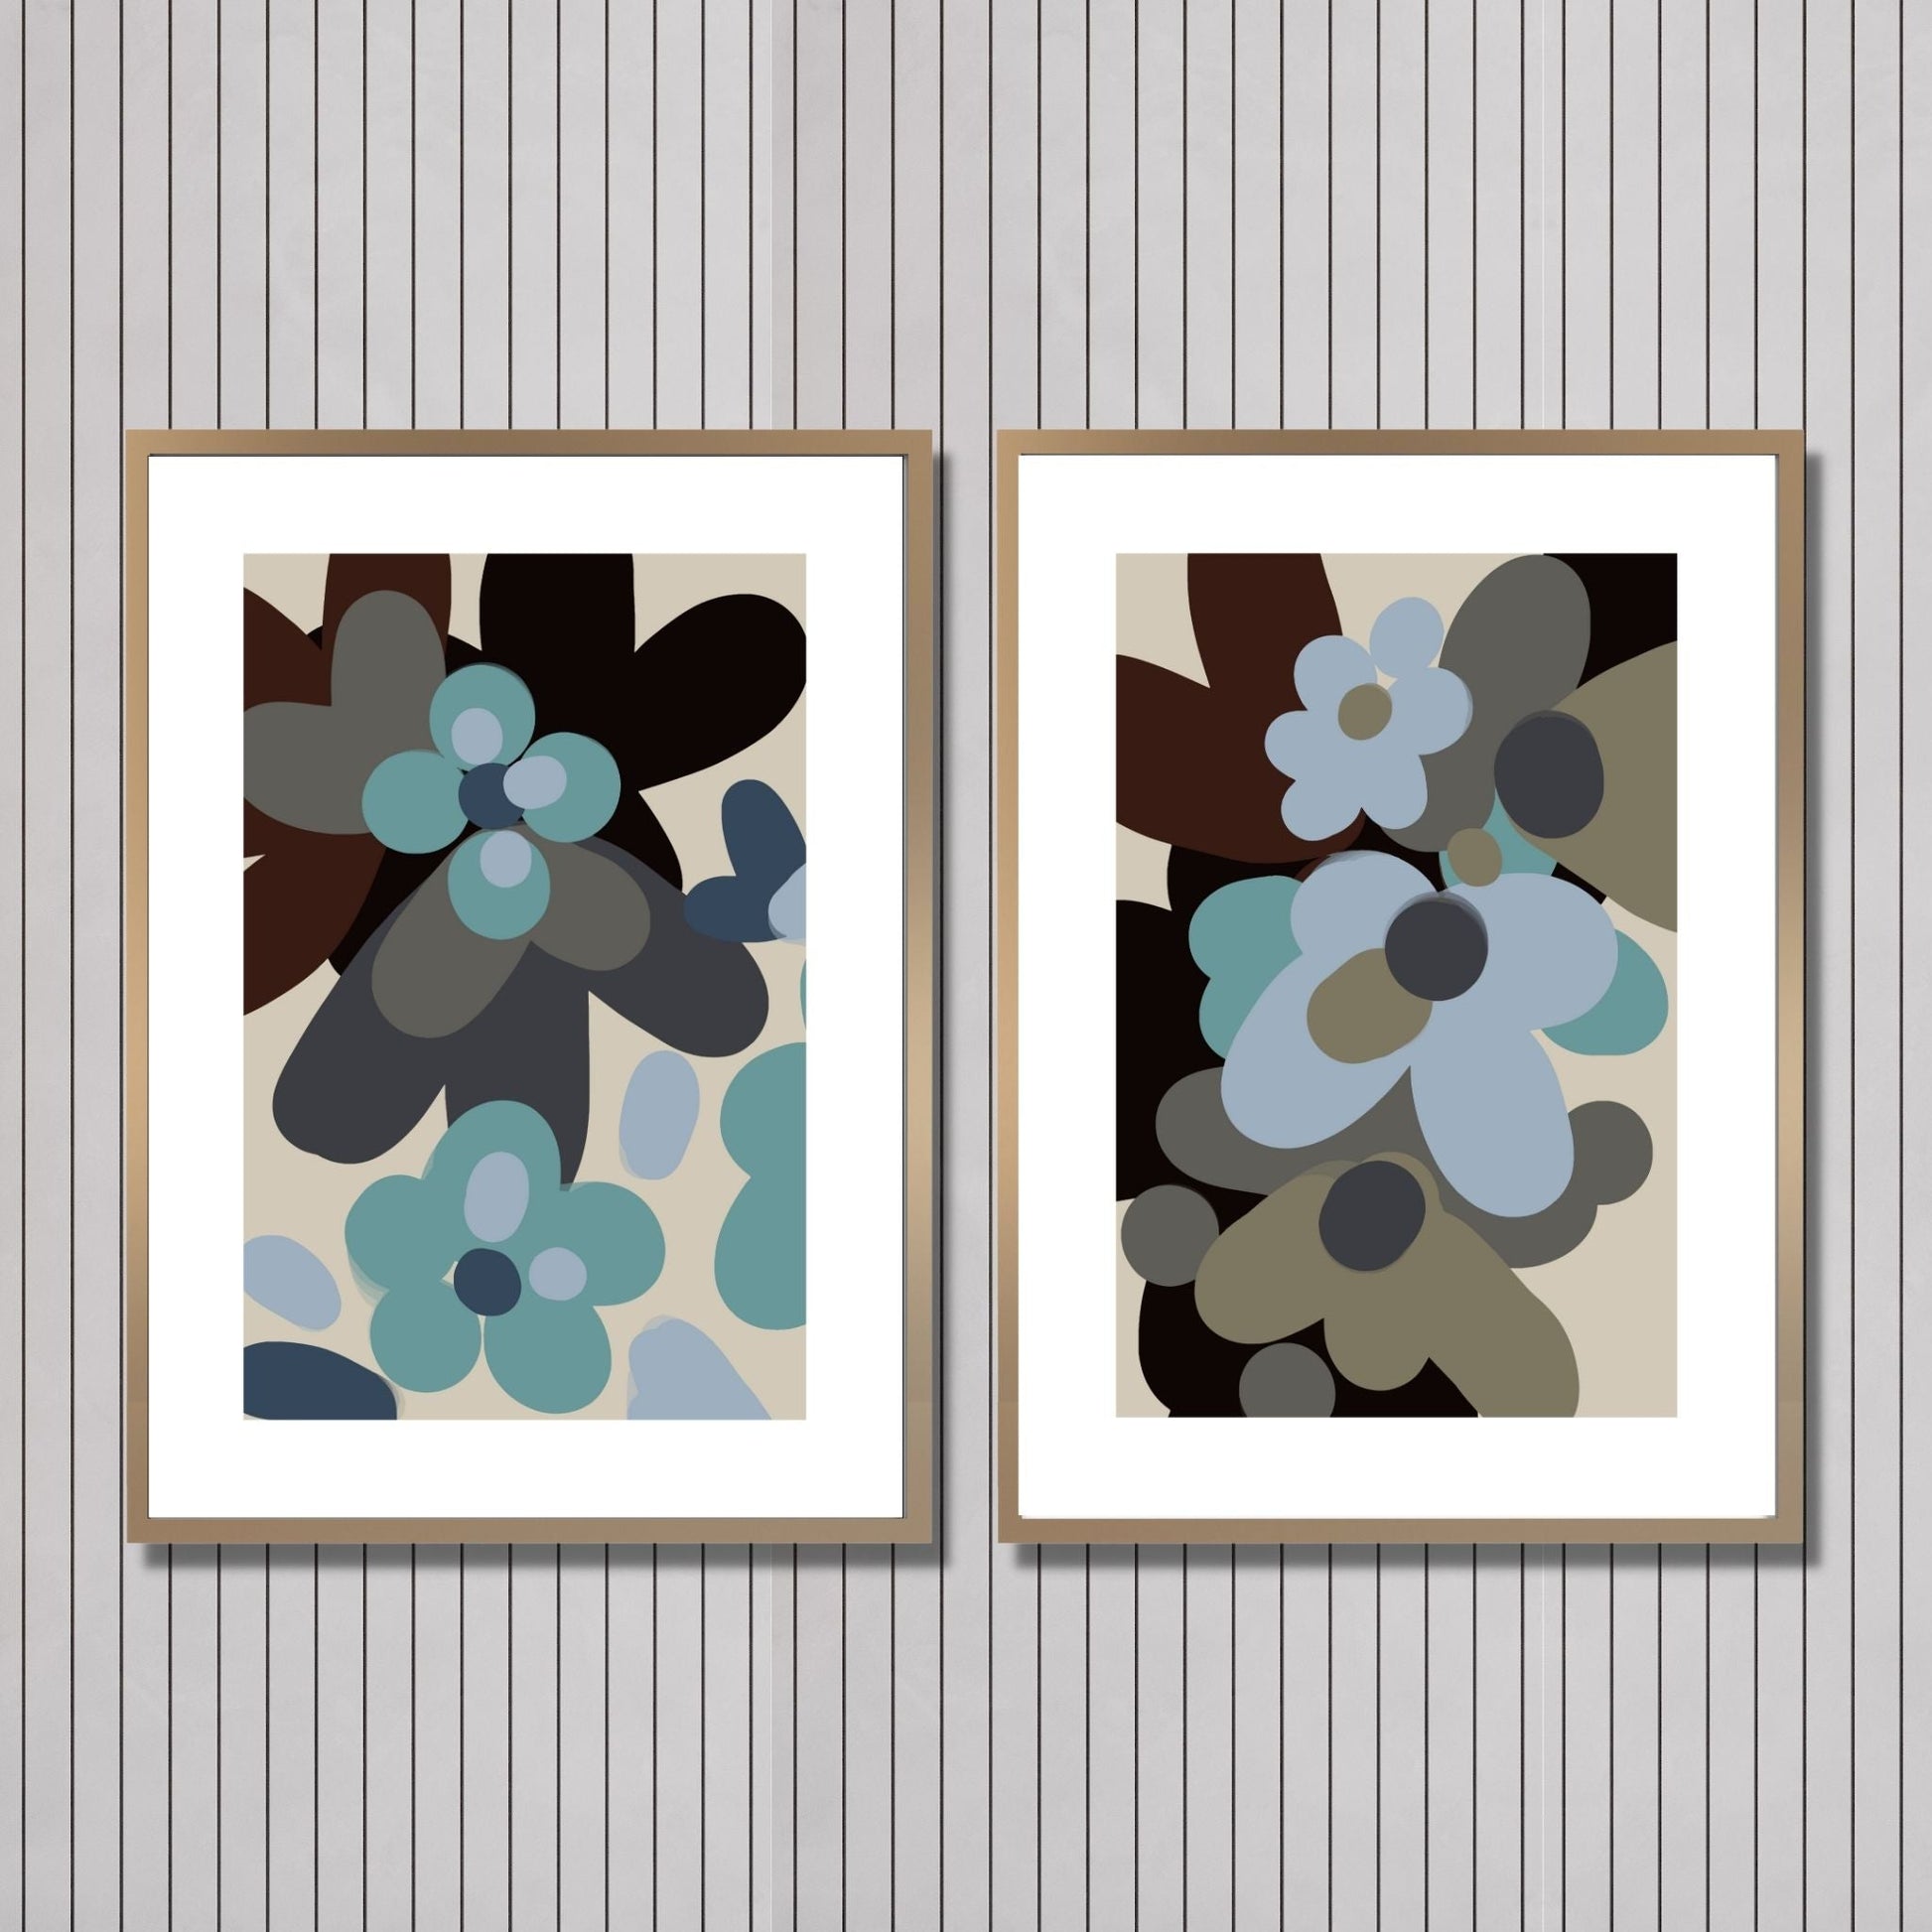  Illustrasjon som viser Abstrakt Flowers No1 og No2 i eikerammer på en vegg.